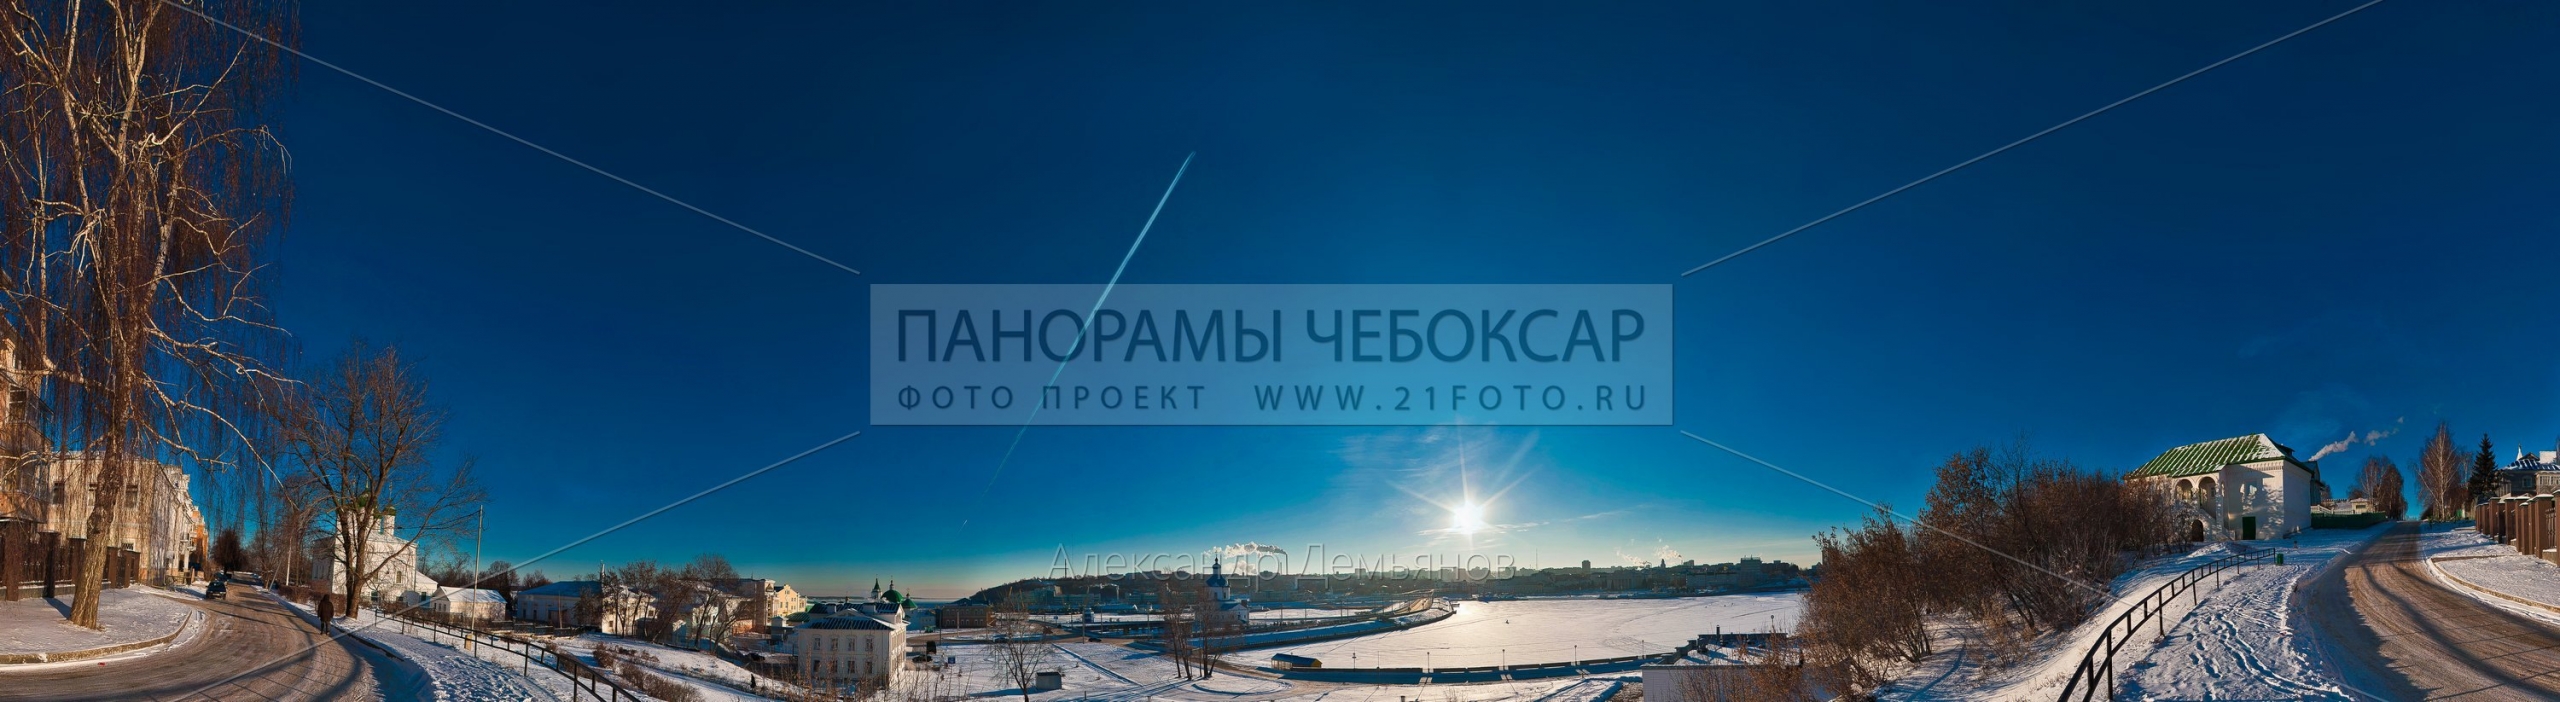 Фото-панорама Чебоксарского залива зимой вид на юг